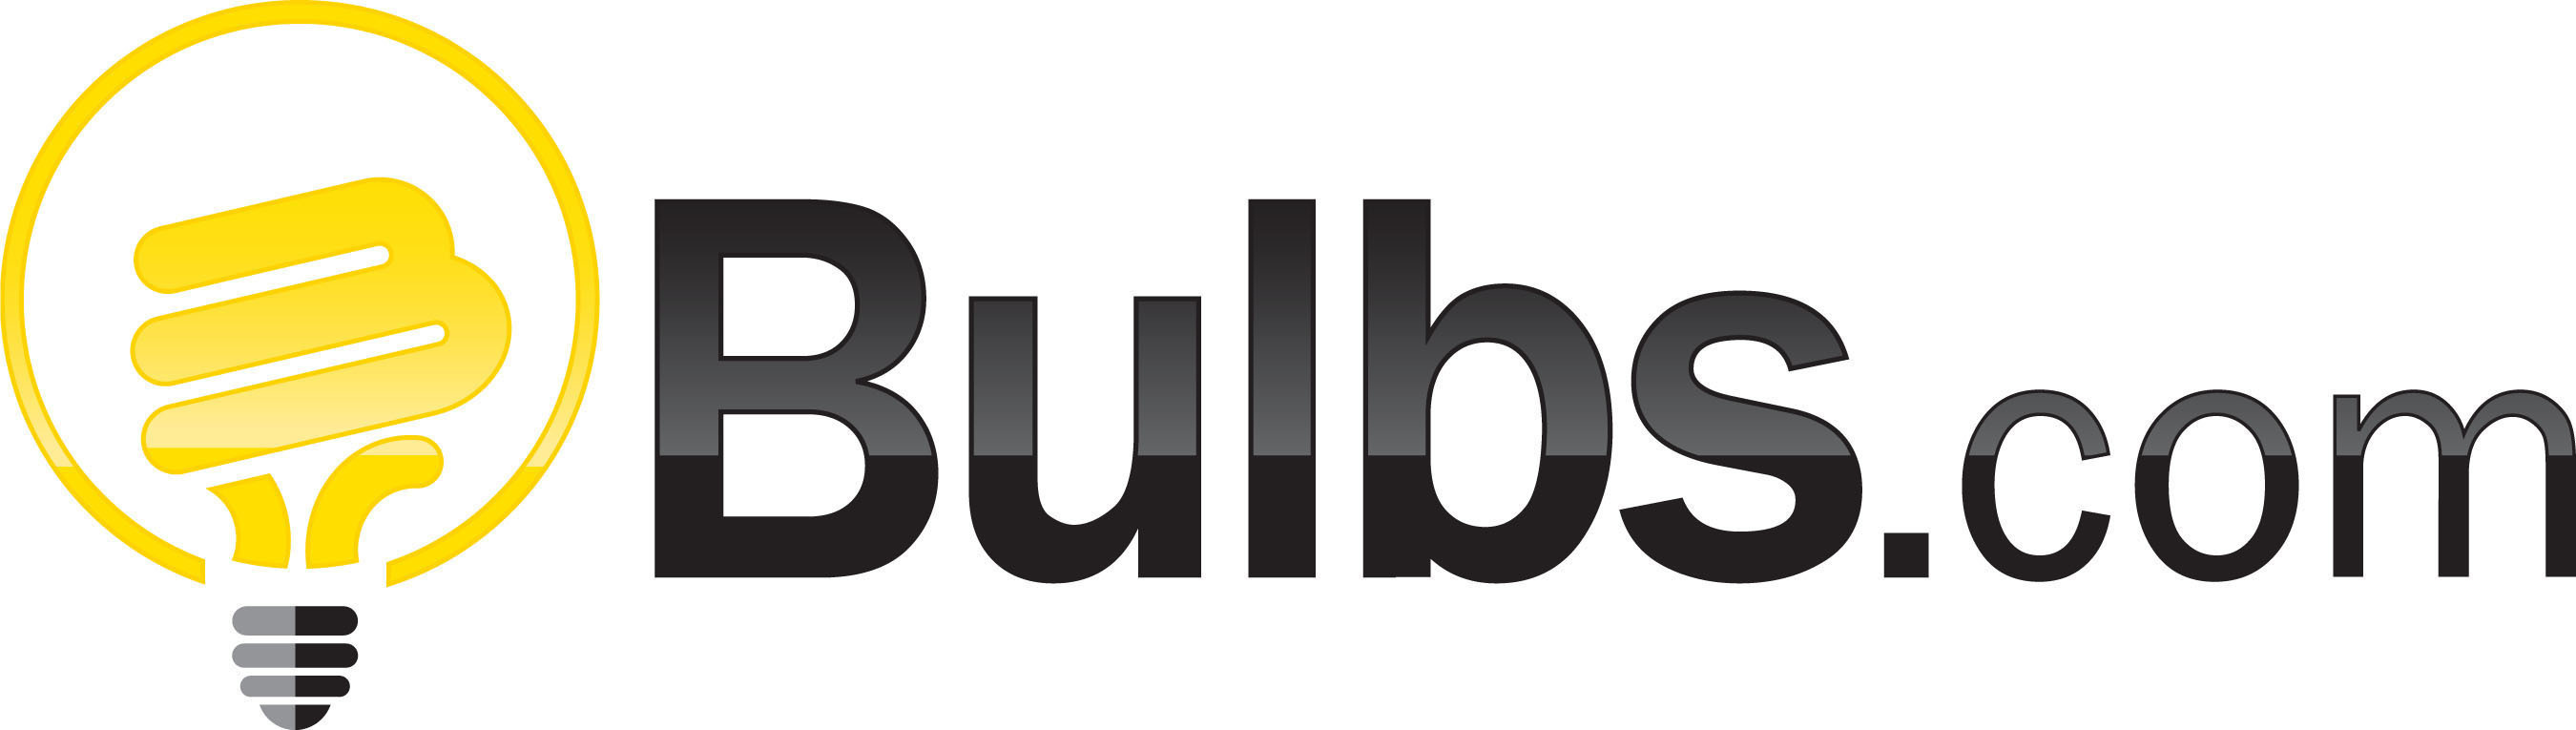 Bulbs.com logo.